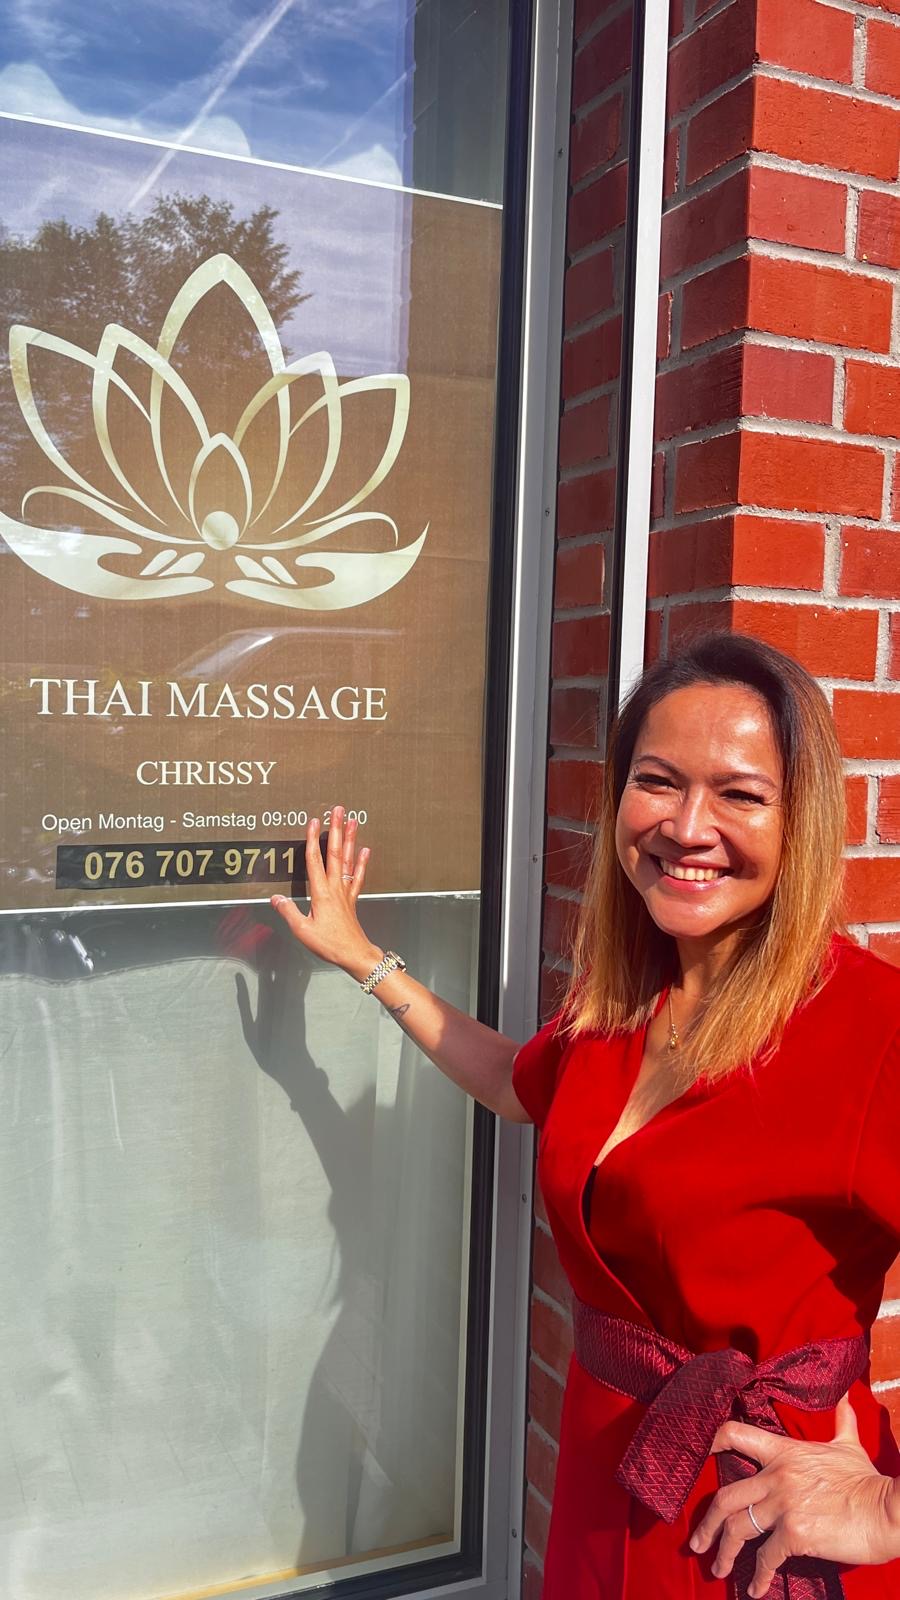 Bilder Thai Massage Chrissy